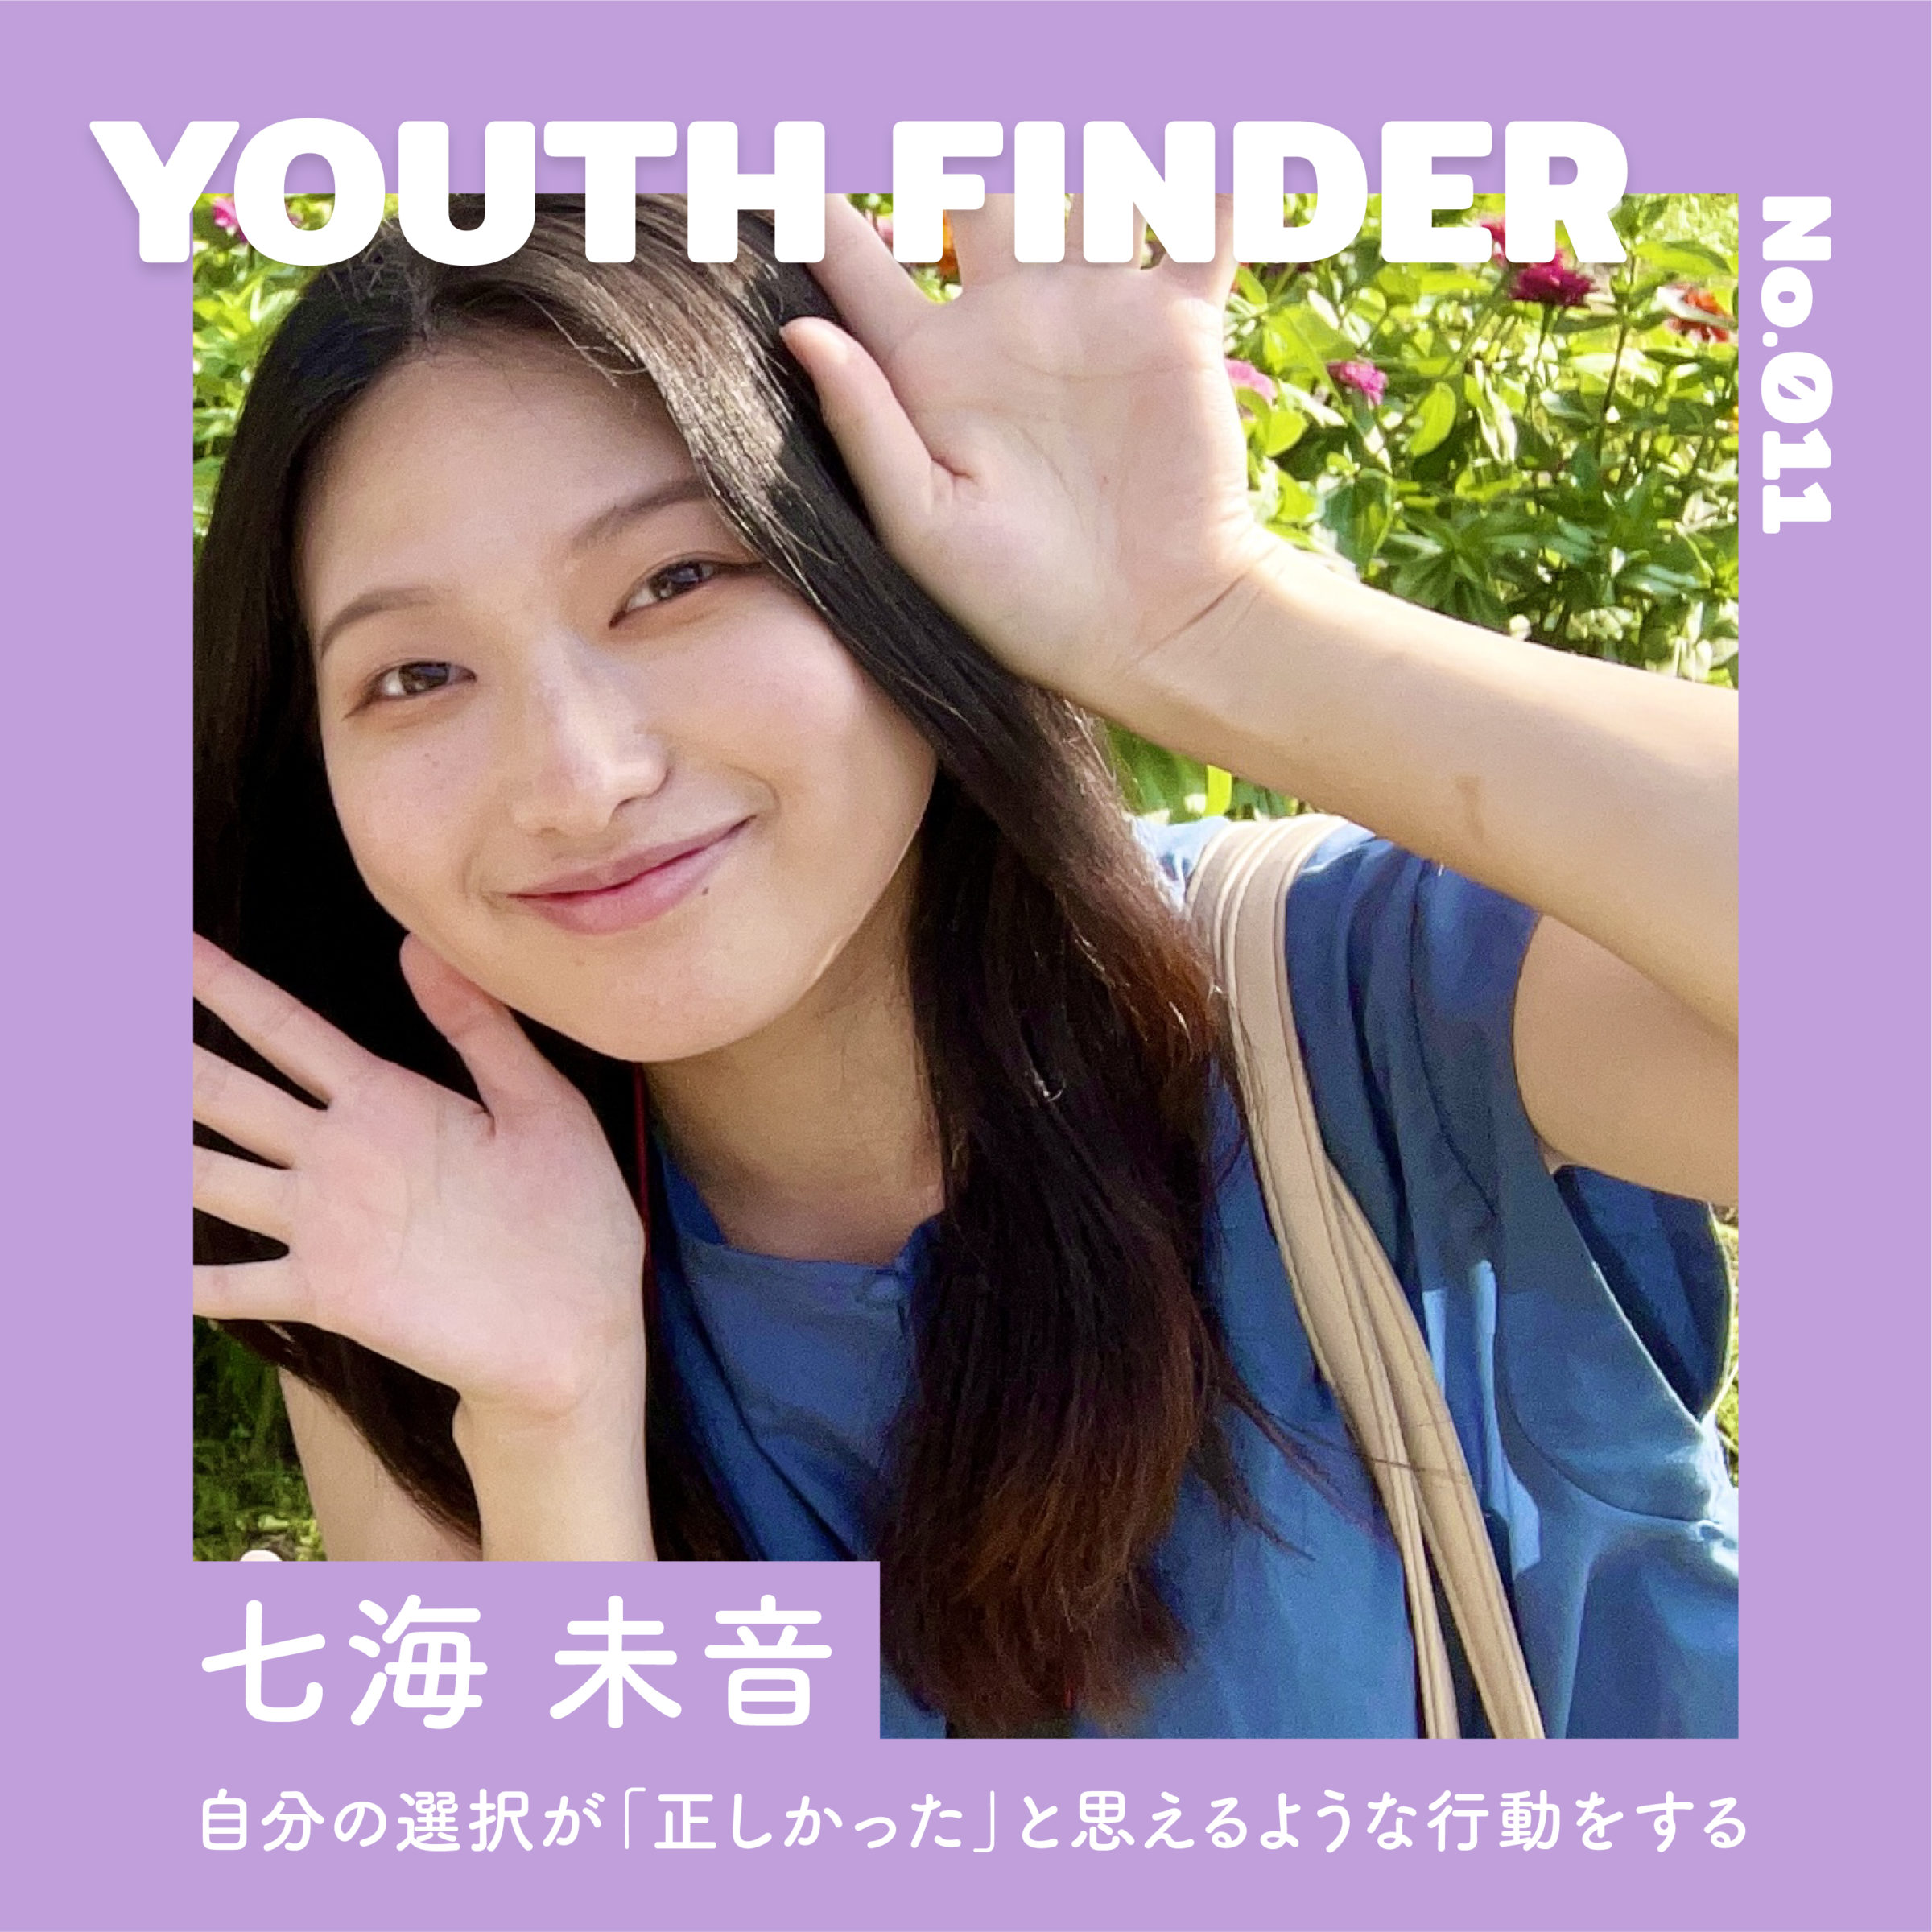 学生ライターとして福島のリアルな情報を取材・発信する 七海未音さん【Youth Finder】の画像